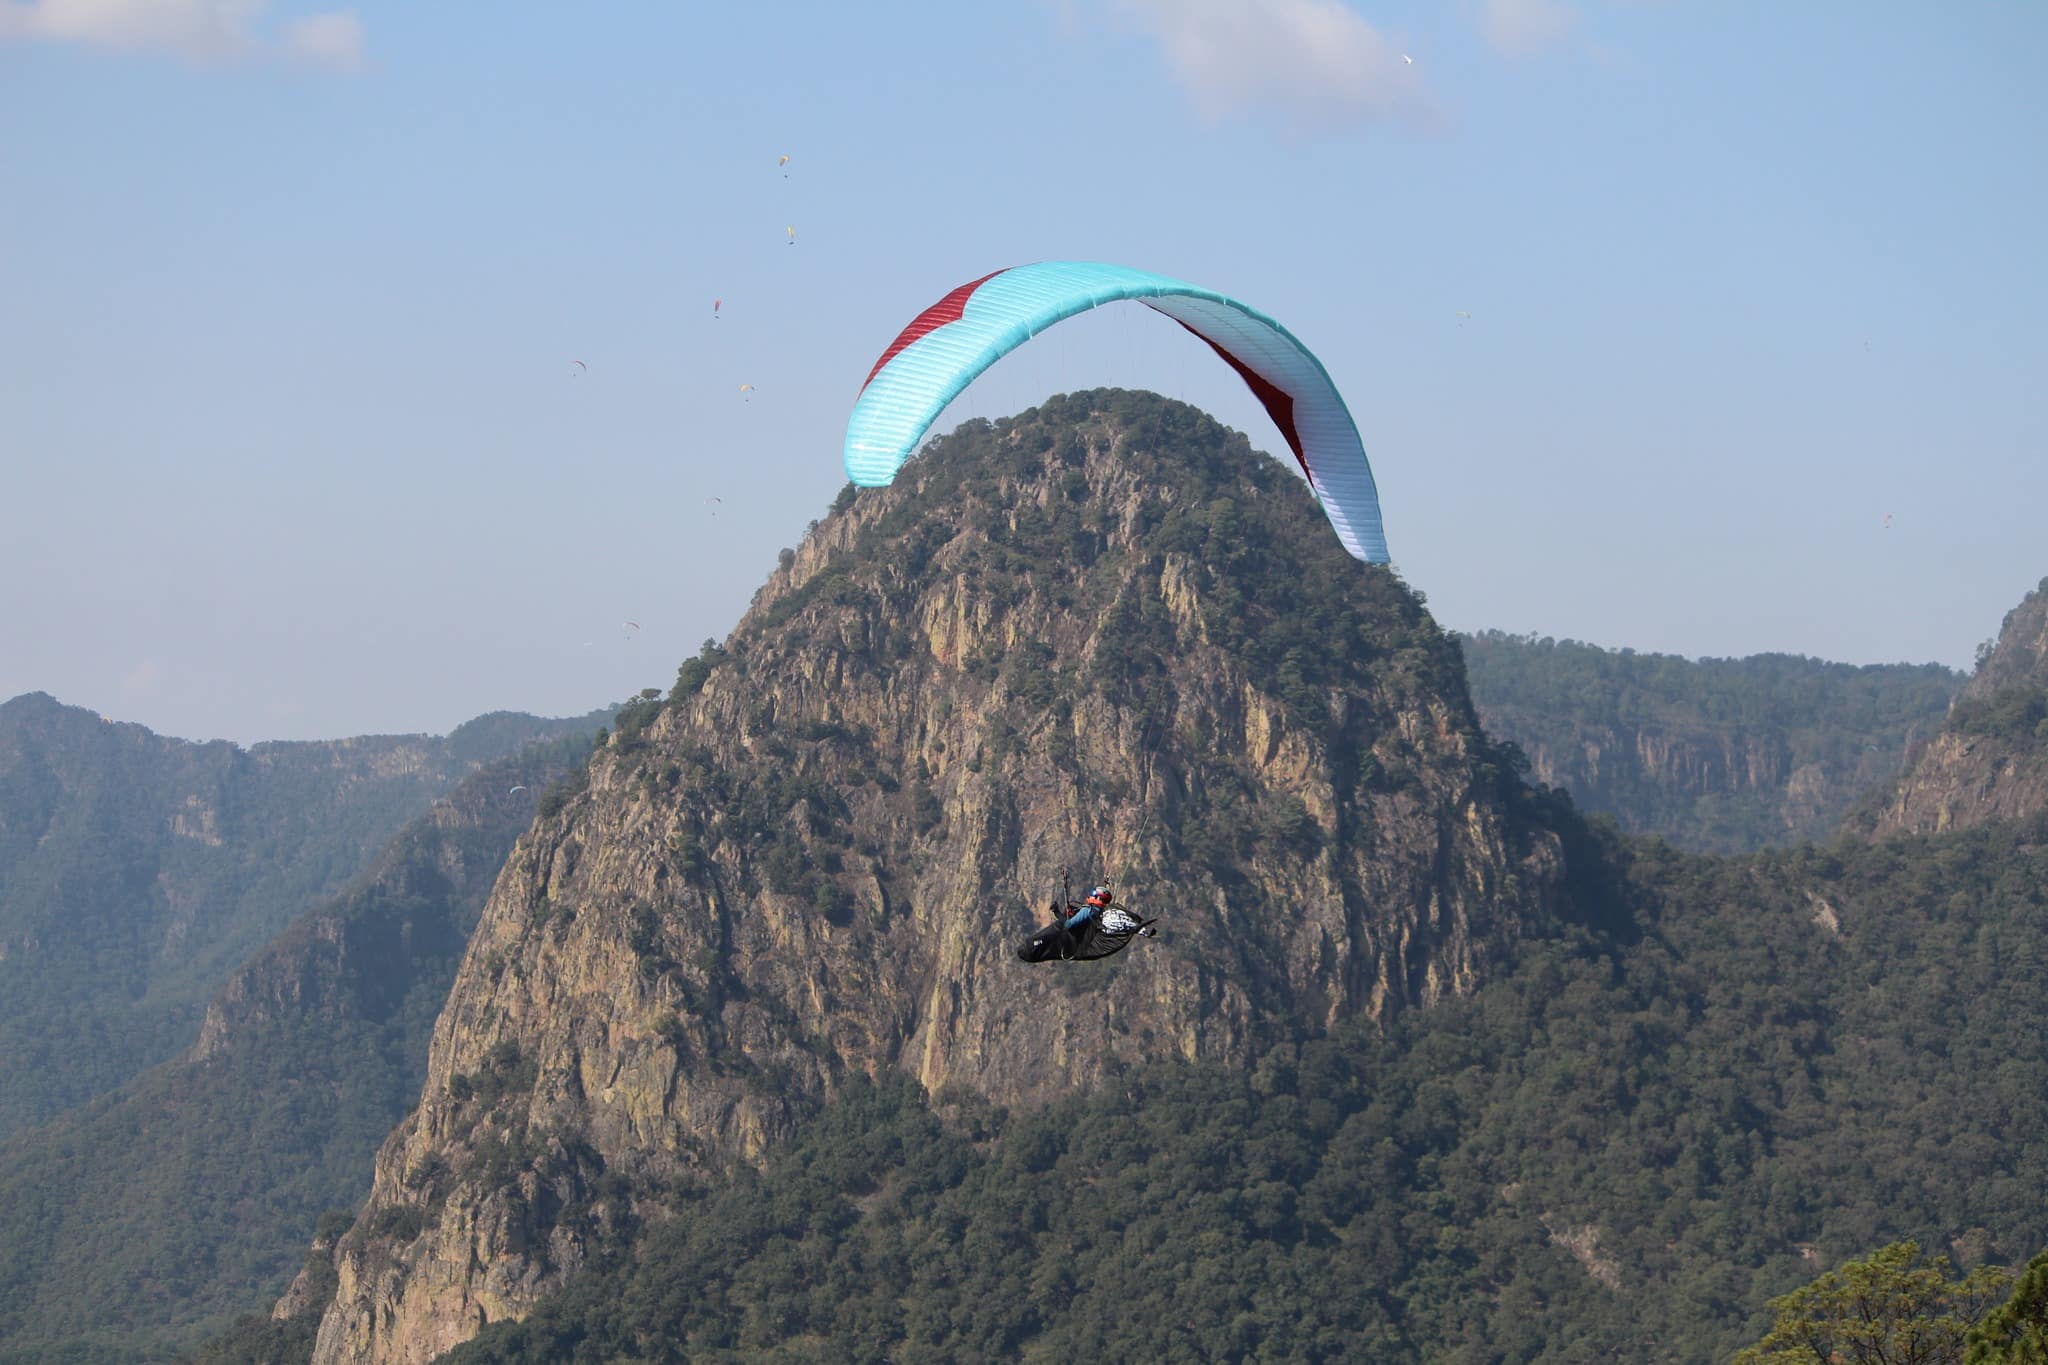 Vive la adrenalina en el Monarca Paragliding de Valle de Bravo